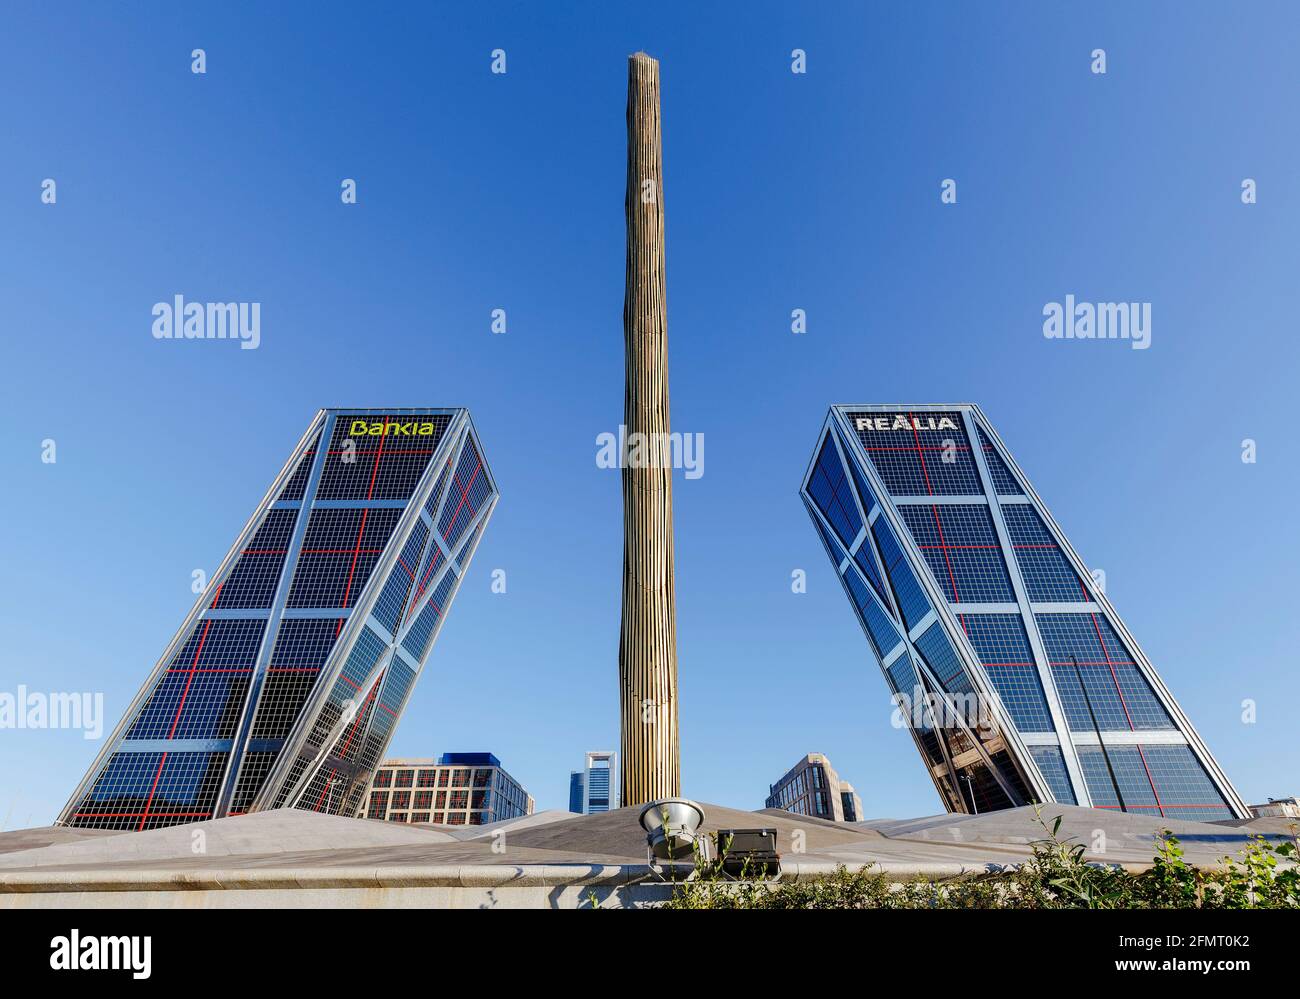 Madrid, Spagna - 28 novembre 2015: Le torri della porta d'Europa, note anche come Torri KIO (Torres KIO), sono due edifici di uffici a Madrid. Le torri ha Foto Stock